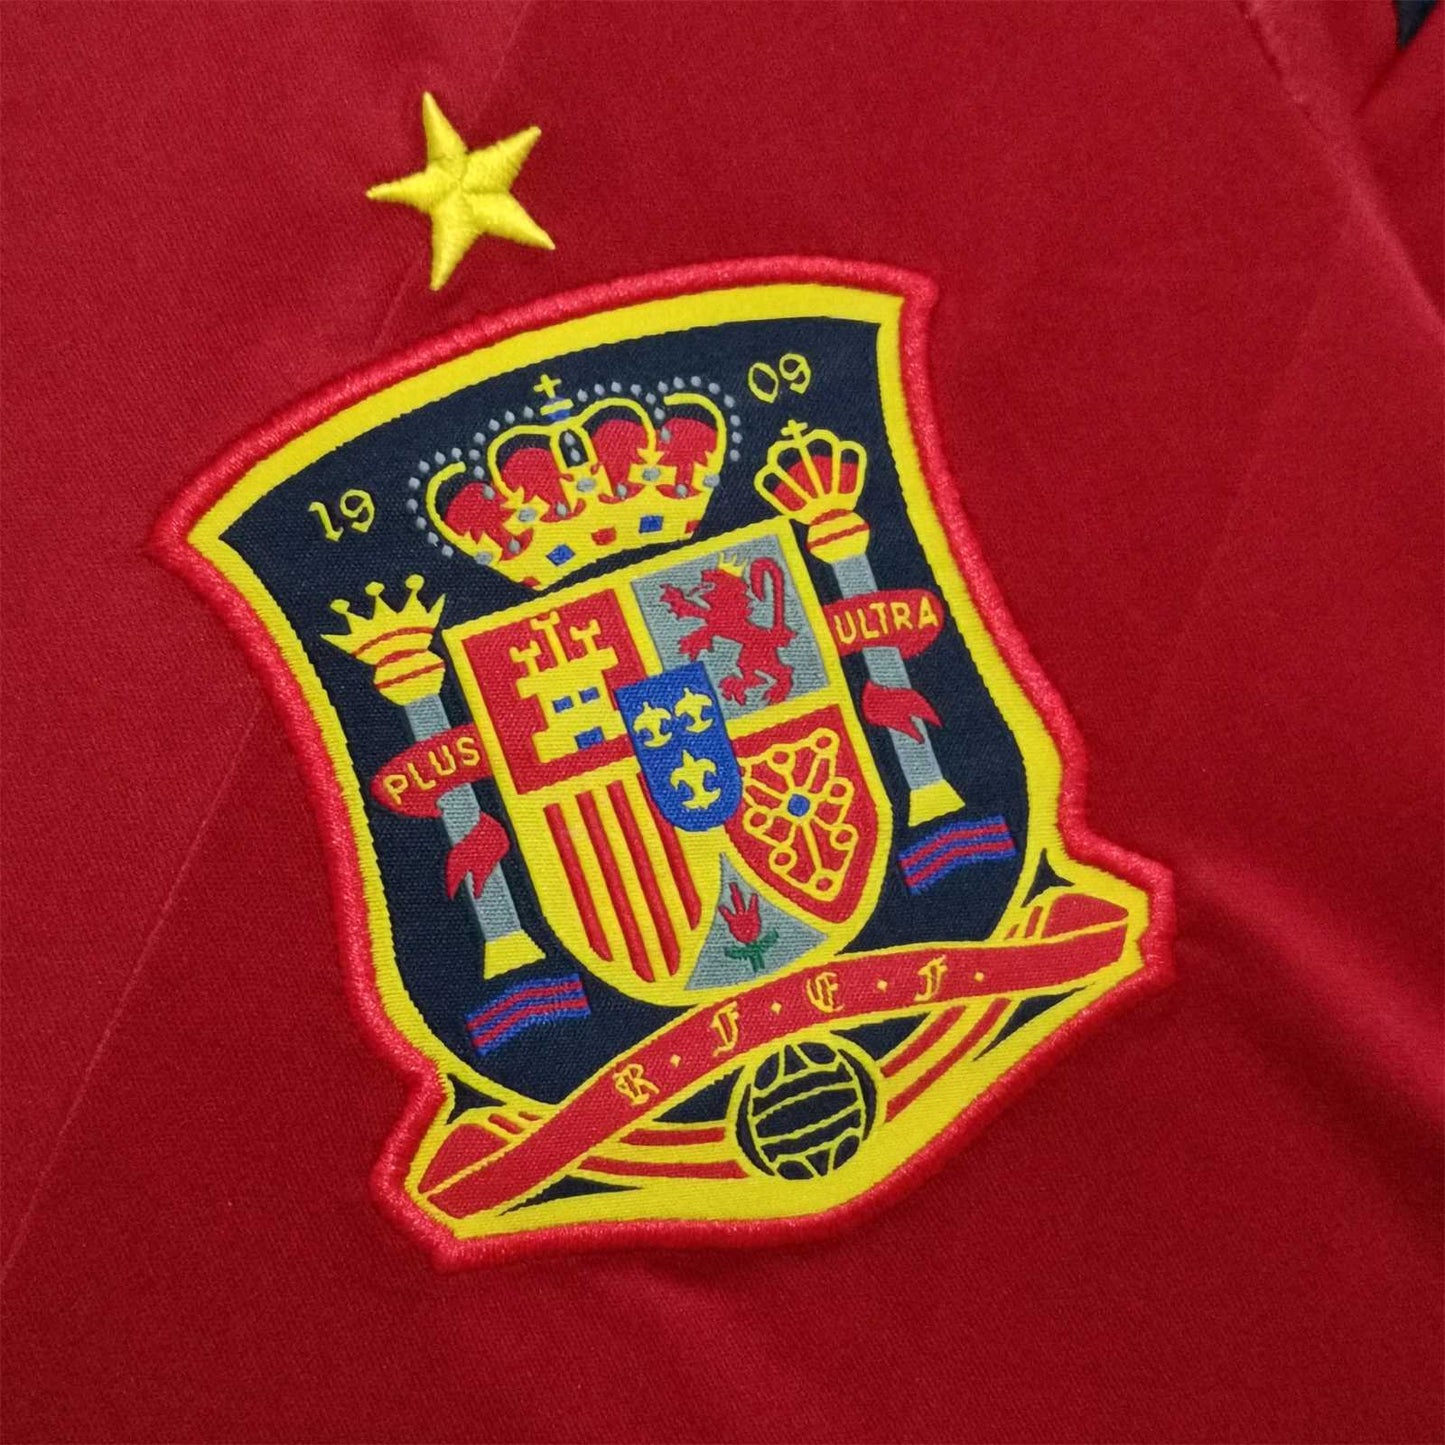 Spain 2012 Home Shirt